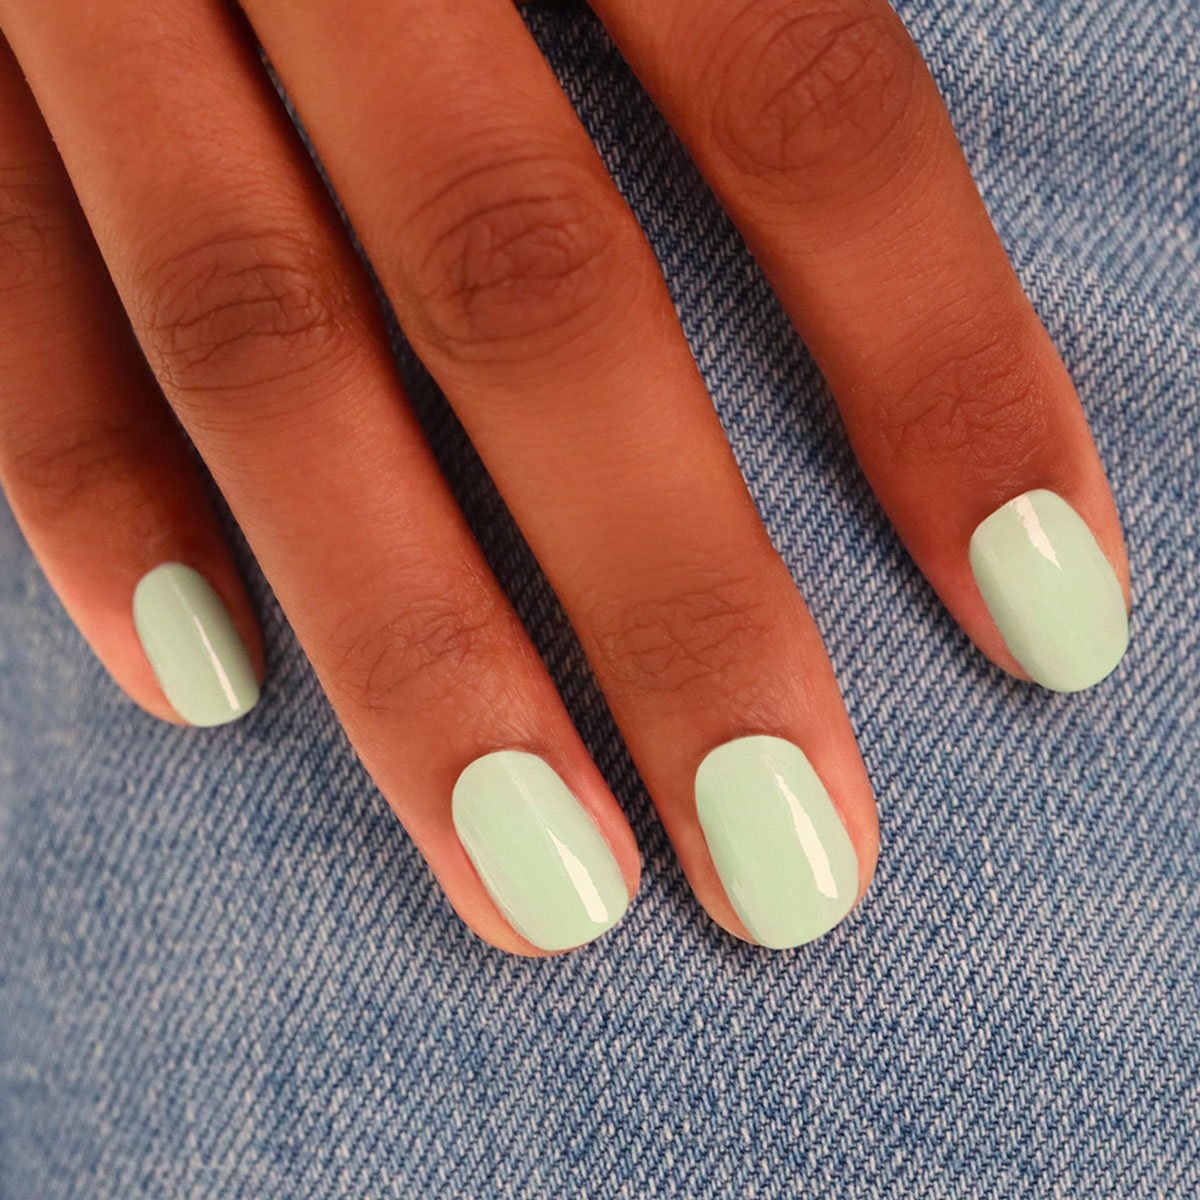 pastel green nail polish